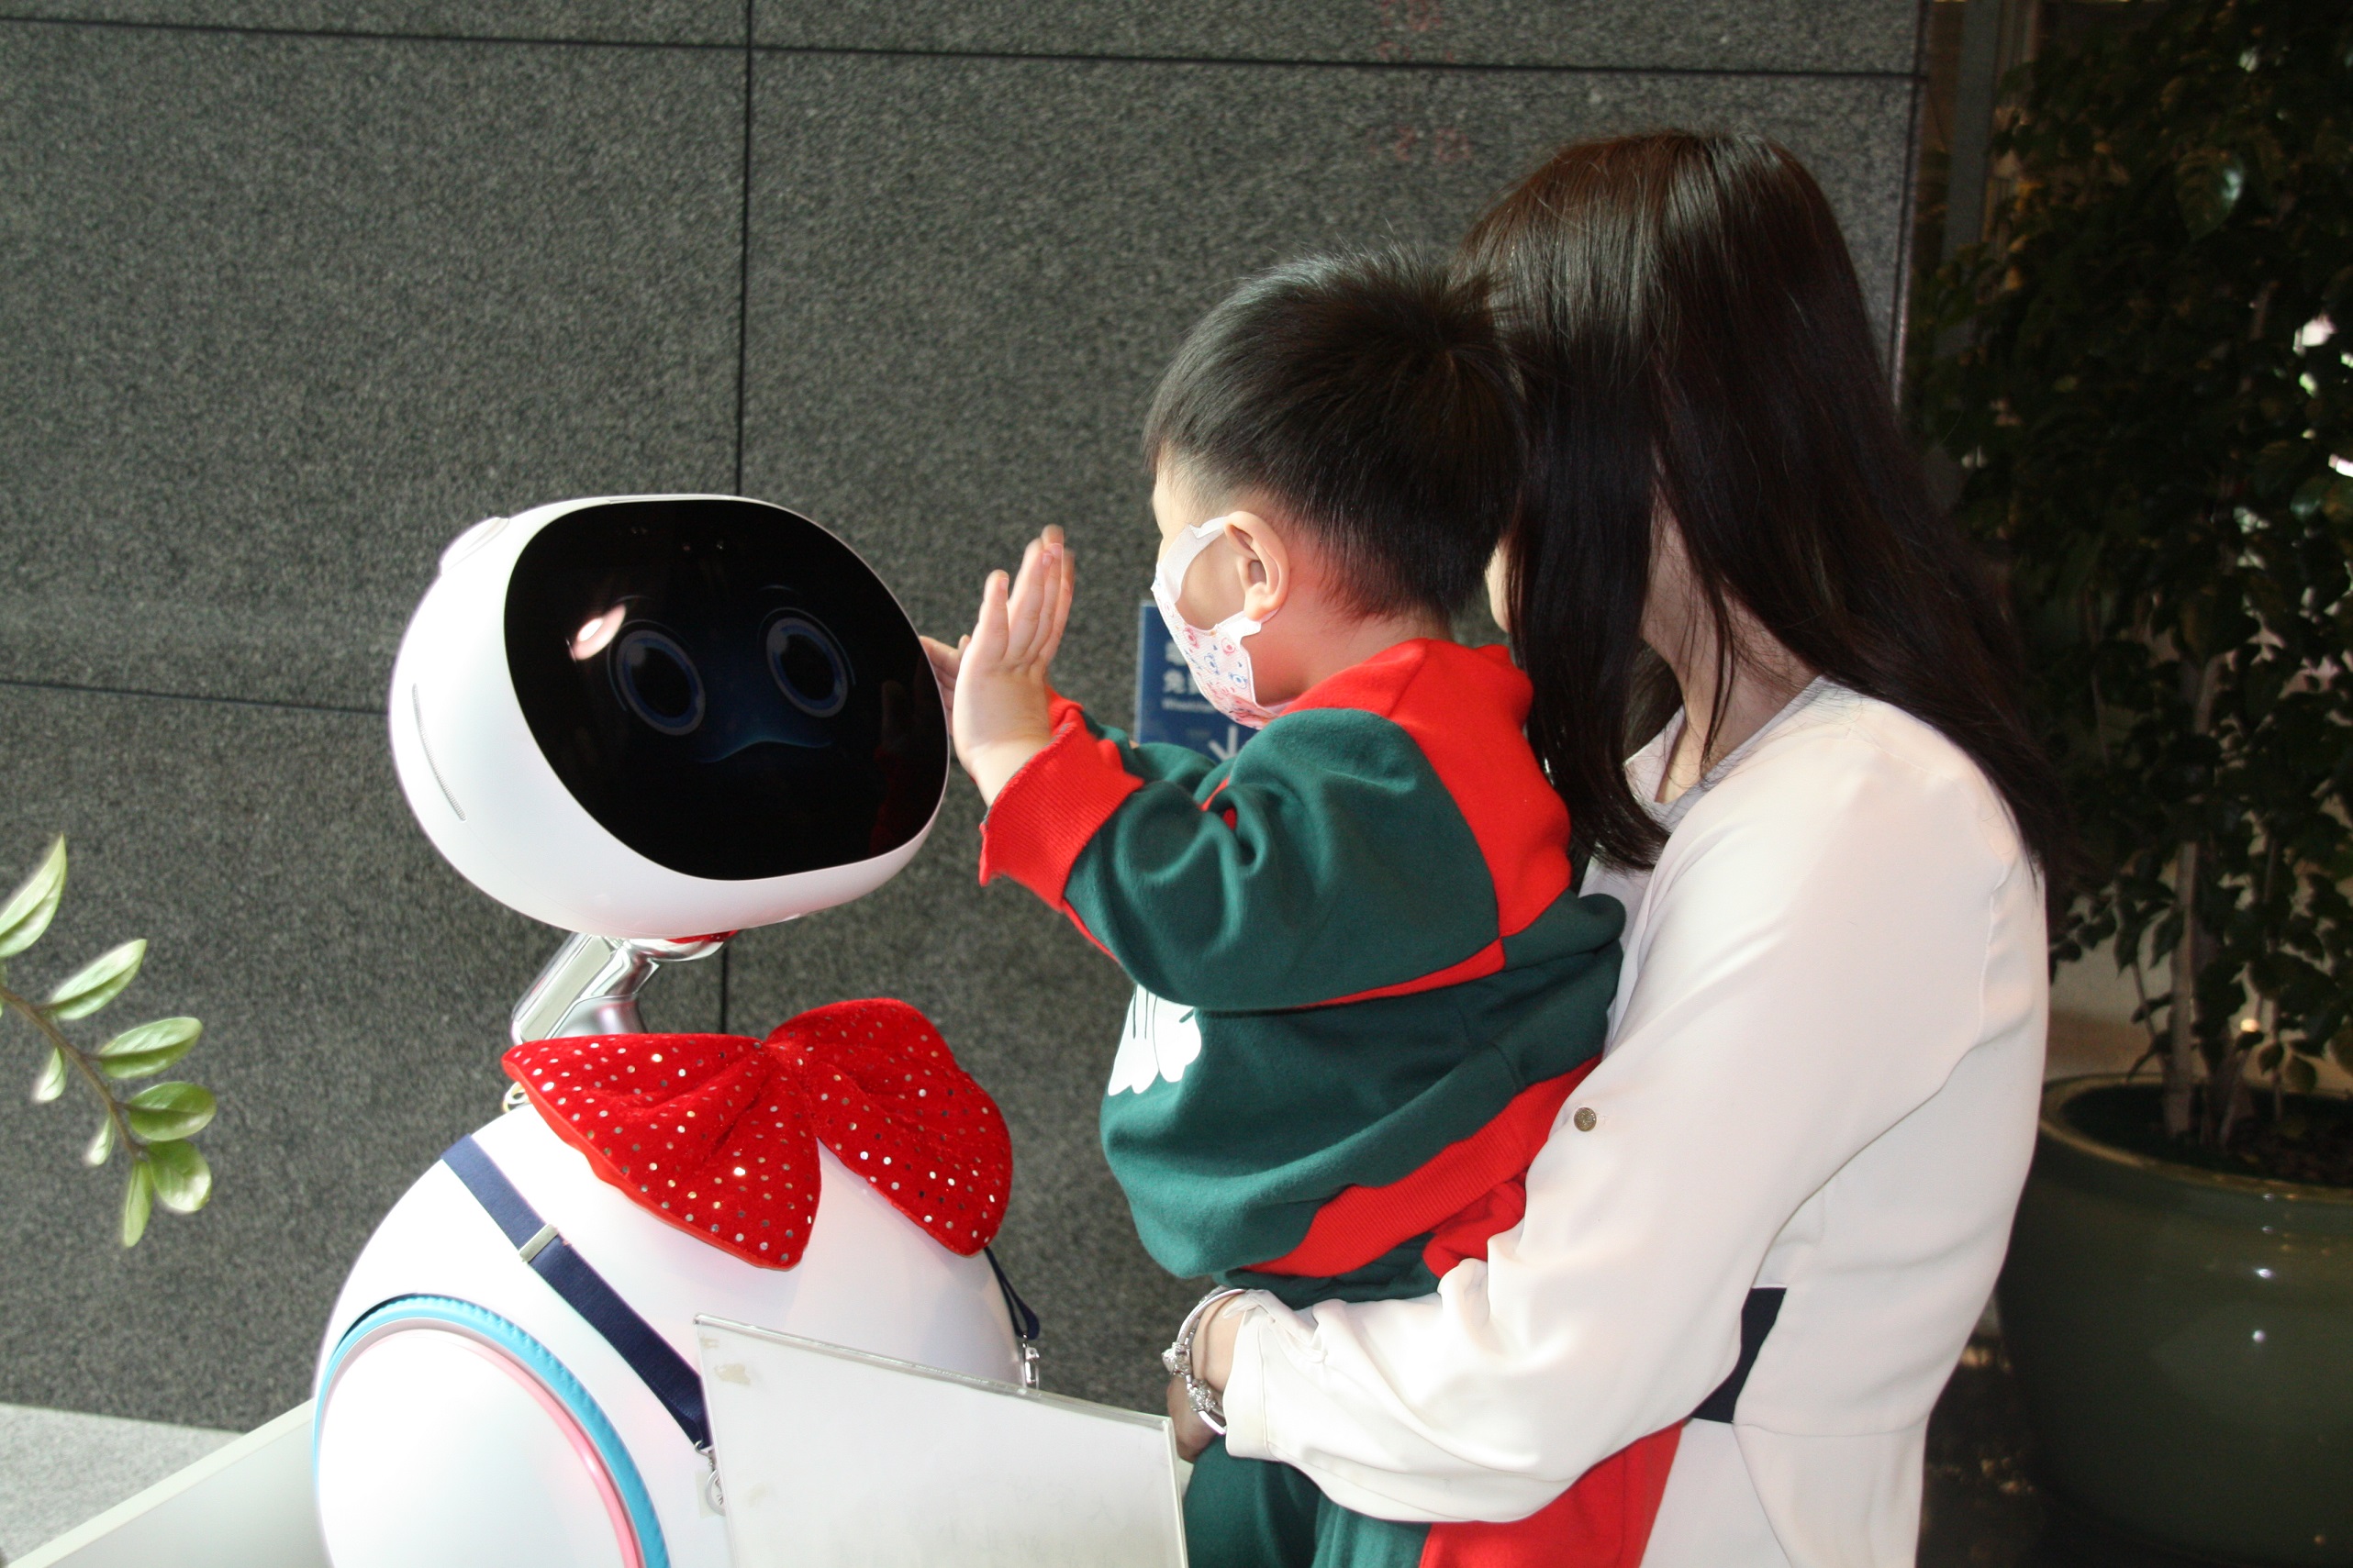 機器人與小朋友互動